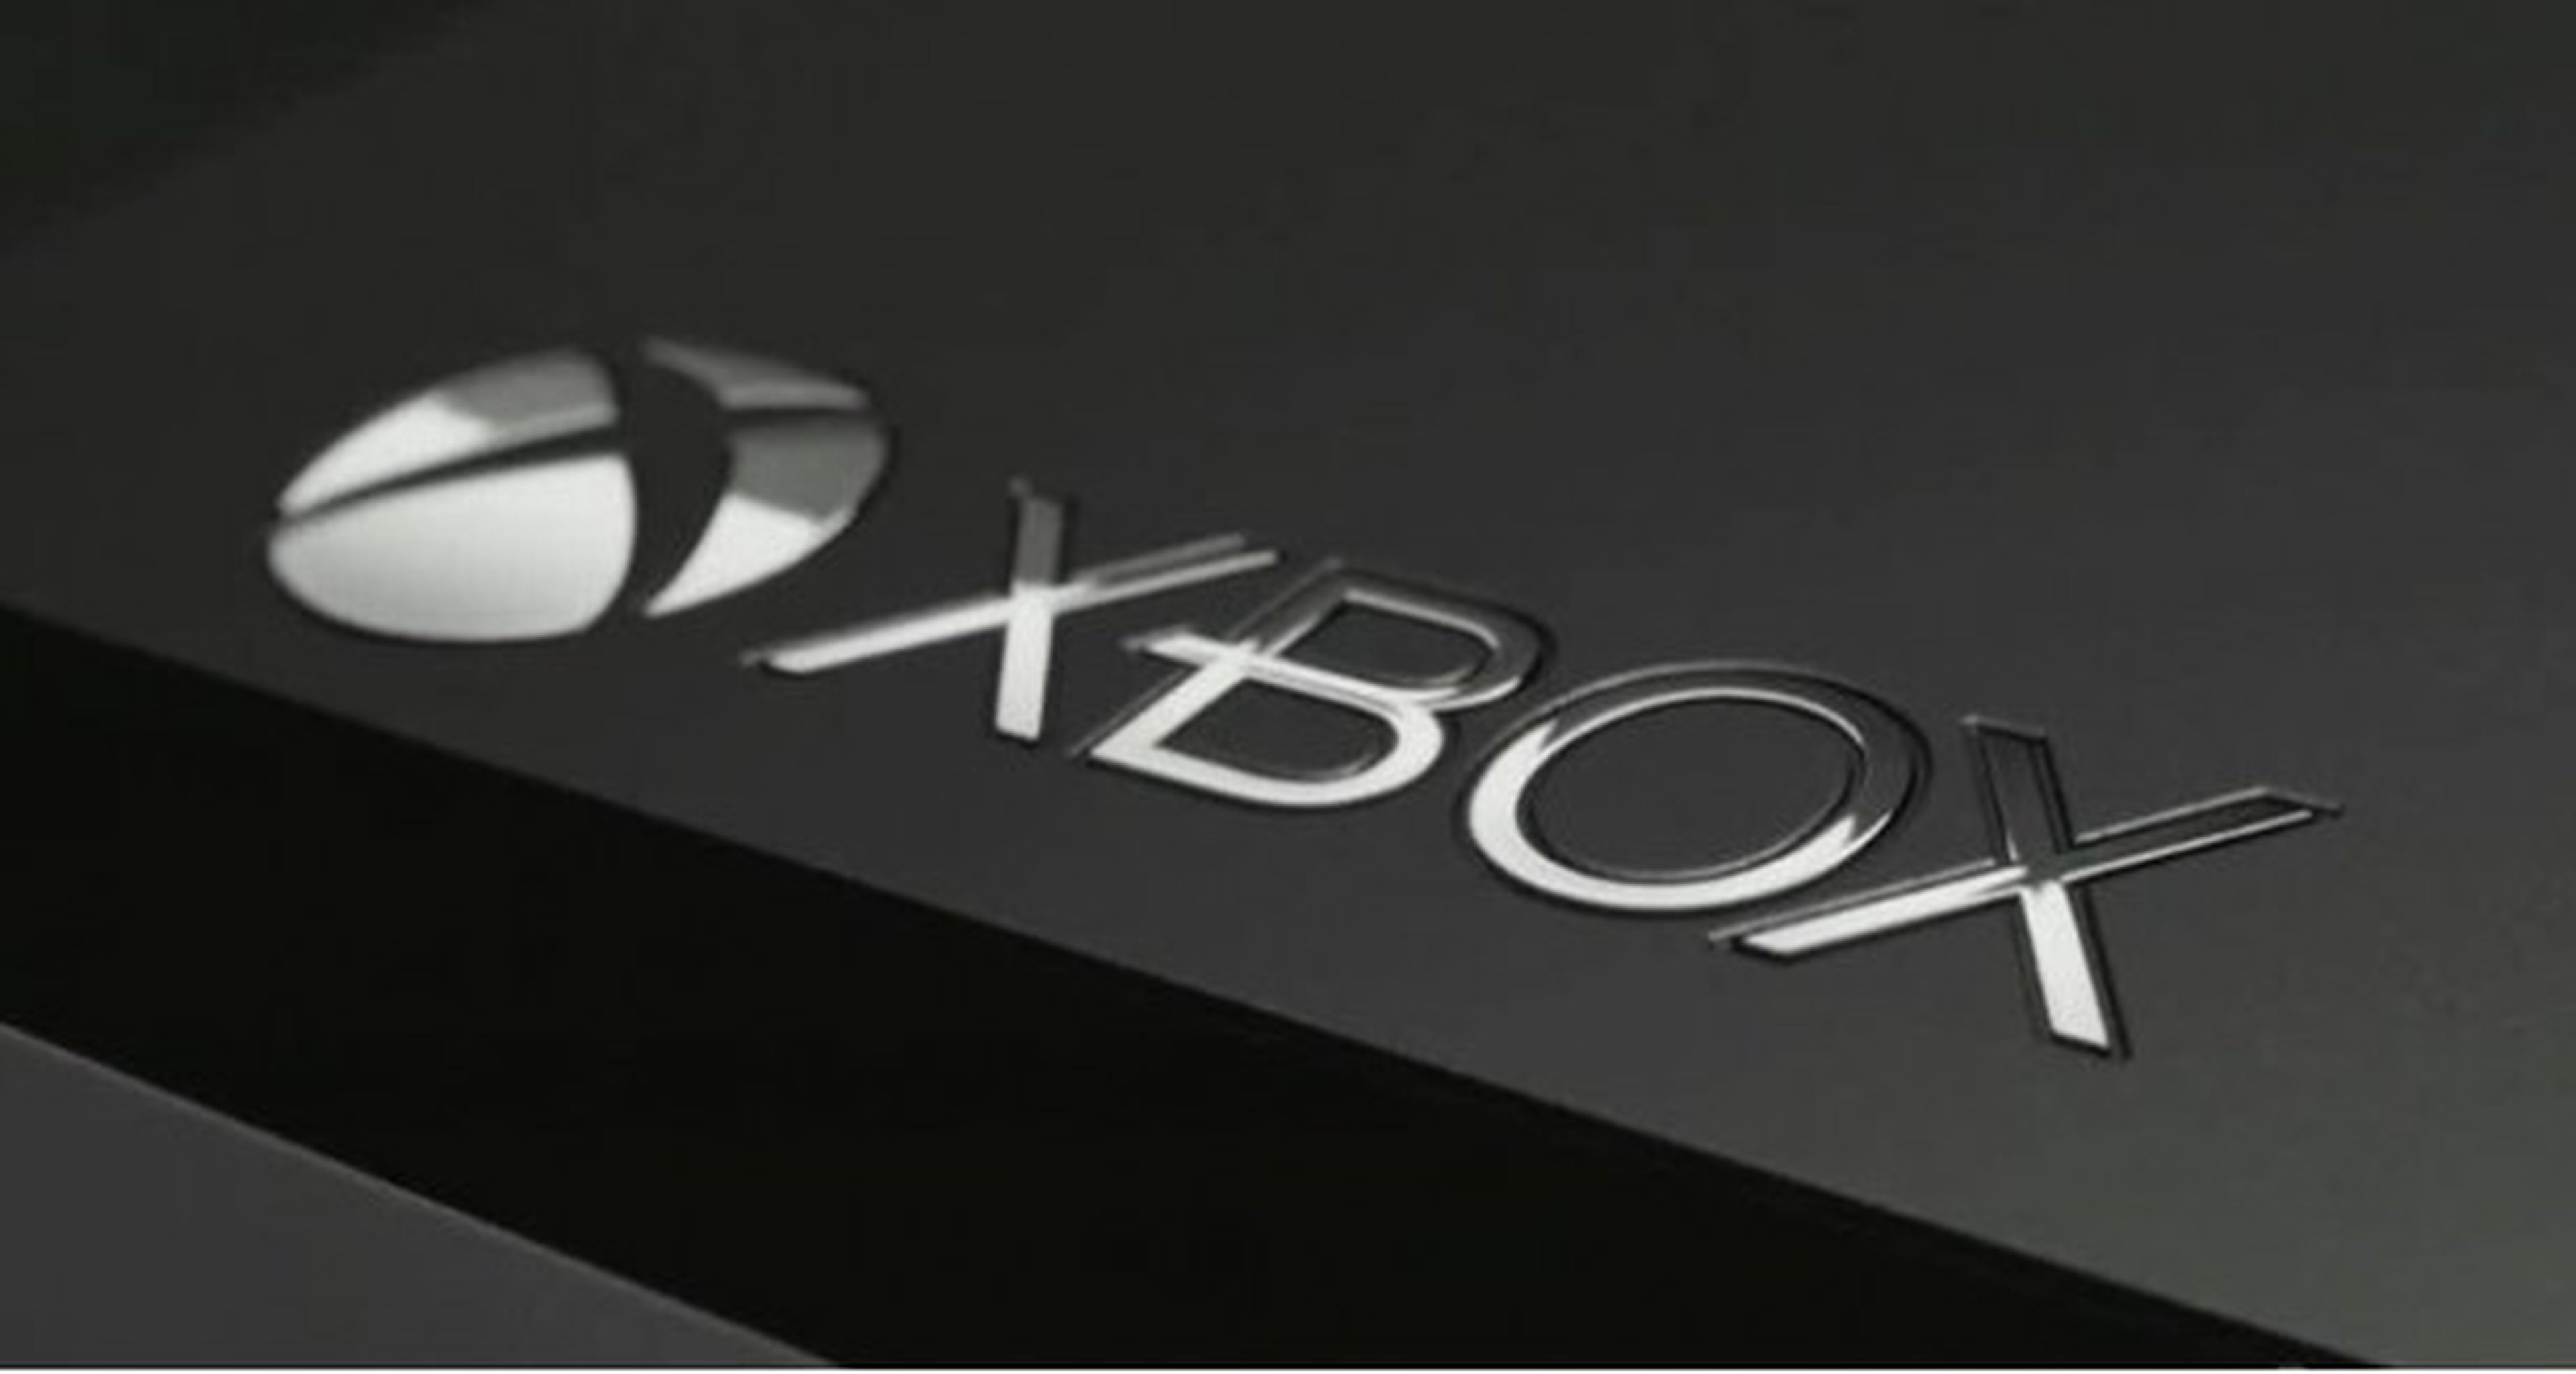 Más sobre Xbox One y la segunda mano (II)